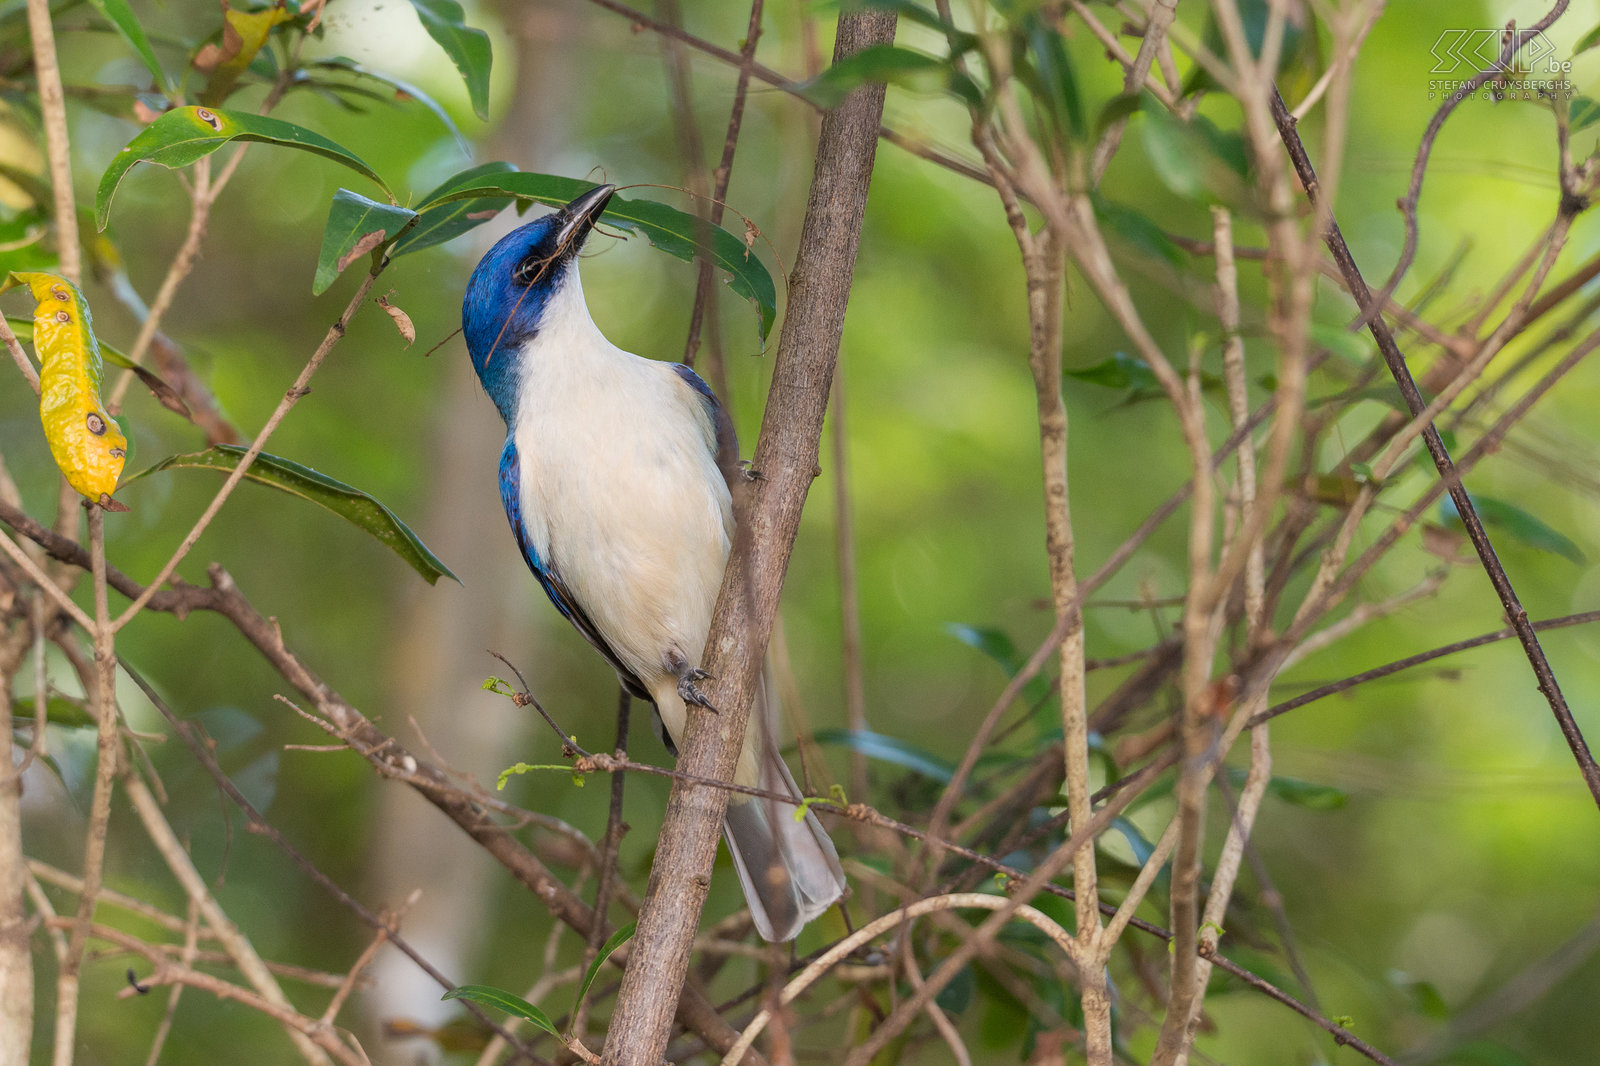 Kirindy - Blauwe vanga De vangas zijn een groep van zangvogels die endemisch zijn in Madagaskar en de Comoren. In Madagaskar zijn er 20 soorten. De vangas zijn een voorbeeld van adaptieve radiatie; ze zijn geëvolueerd van eenzelfde populatie naar een verscheidenheid van vogels met verschillende snavels, groottes en kleuren. De blauwe Vanga (Cyanolanius madagascarinus) is een van hen. Stefan Cruysberghs